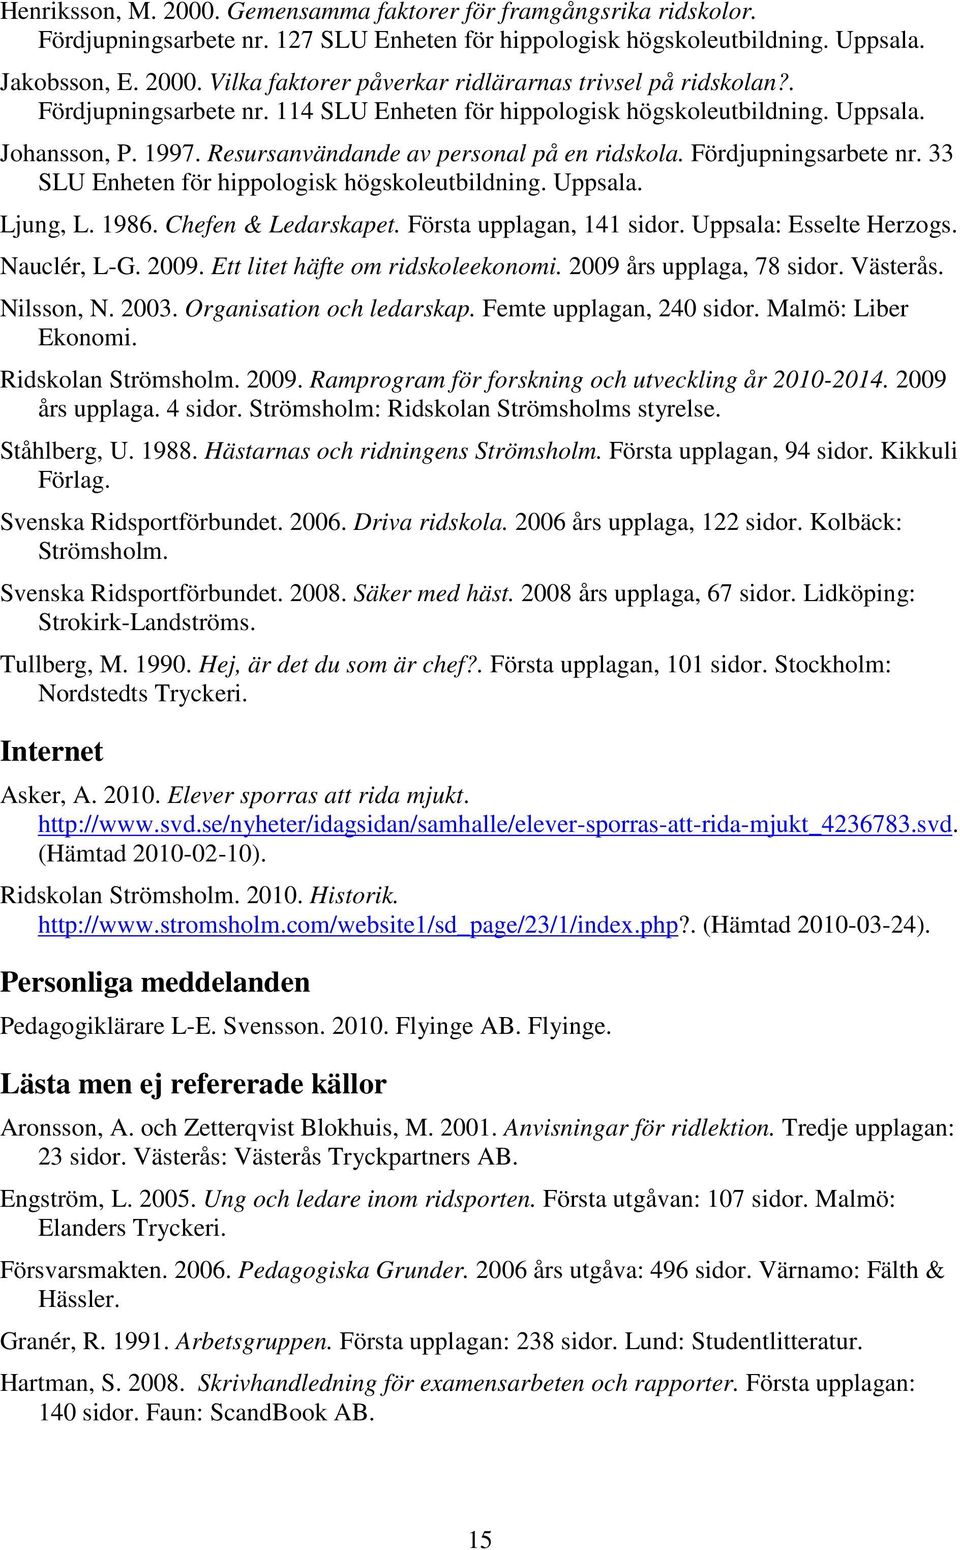 Uppsala. Ljung, L. 1986. Chefen & Ledarskapet. Första upplagan, 141 sidor. Uppsala: Esselte Herzogs. Nauclér, L-G. 2009. Ett litet häfte om ridskoleekonomi. 2009 års upplaga, 78 sidor. Västerås.